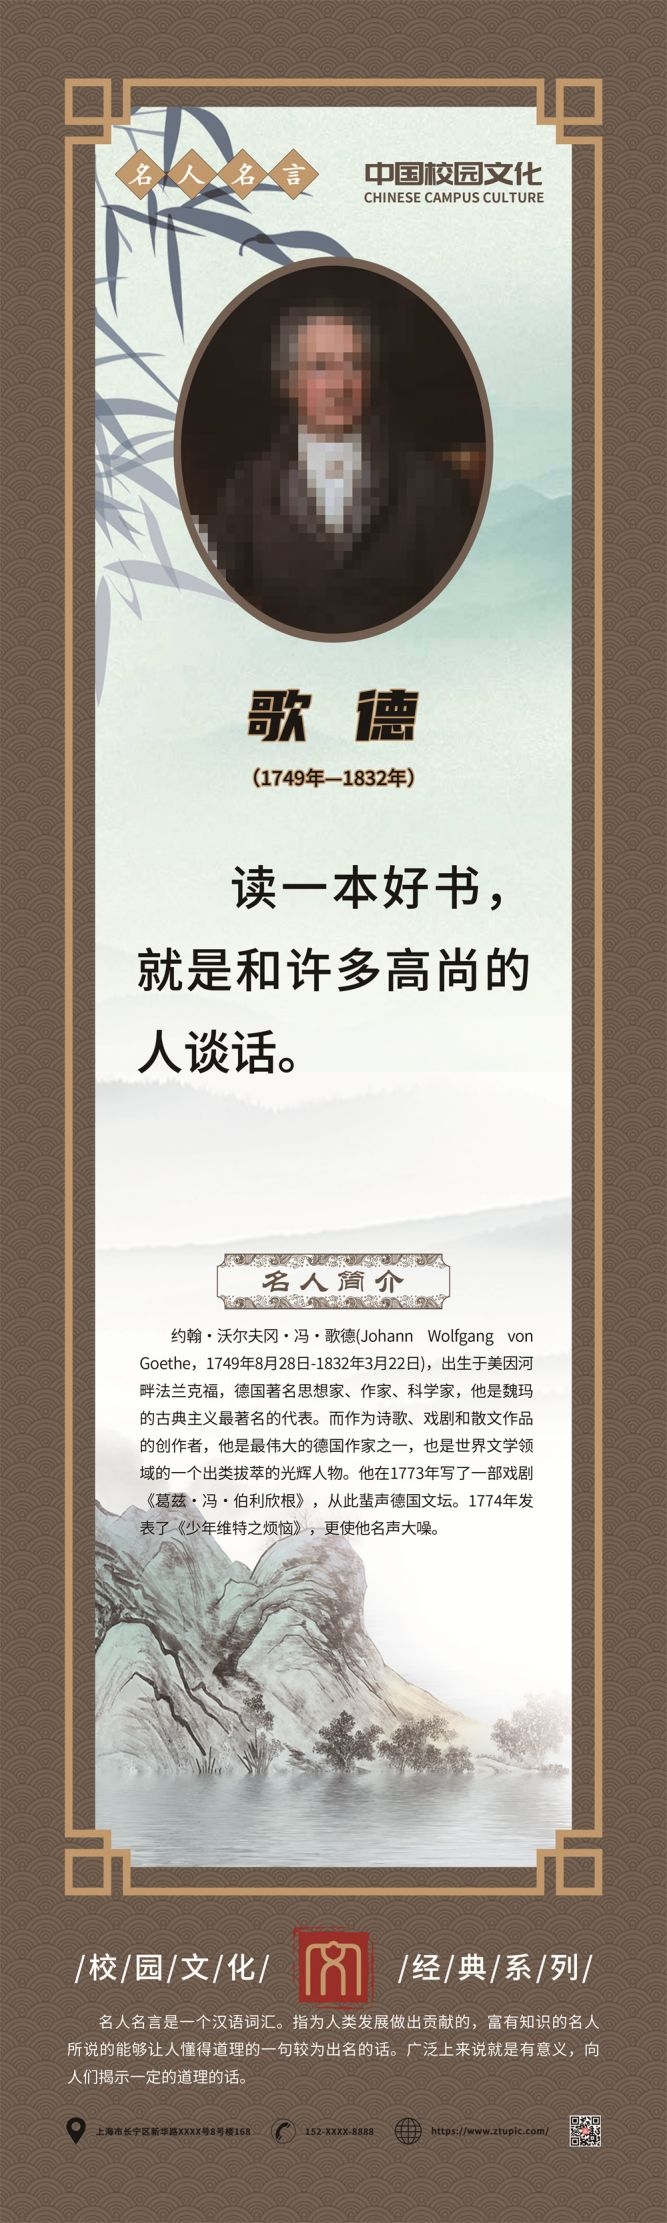 学校校园文化中国风复古名人名言挂画海报 (84)